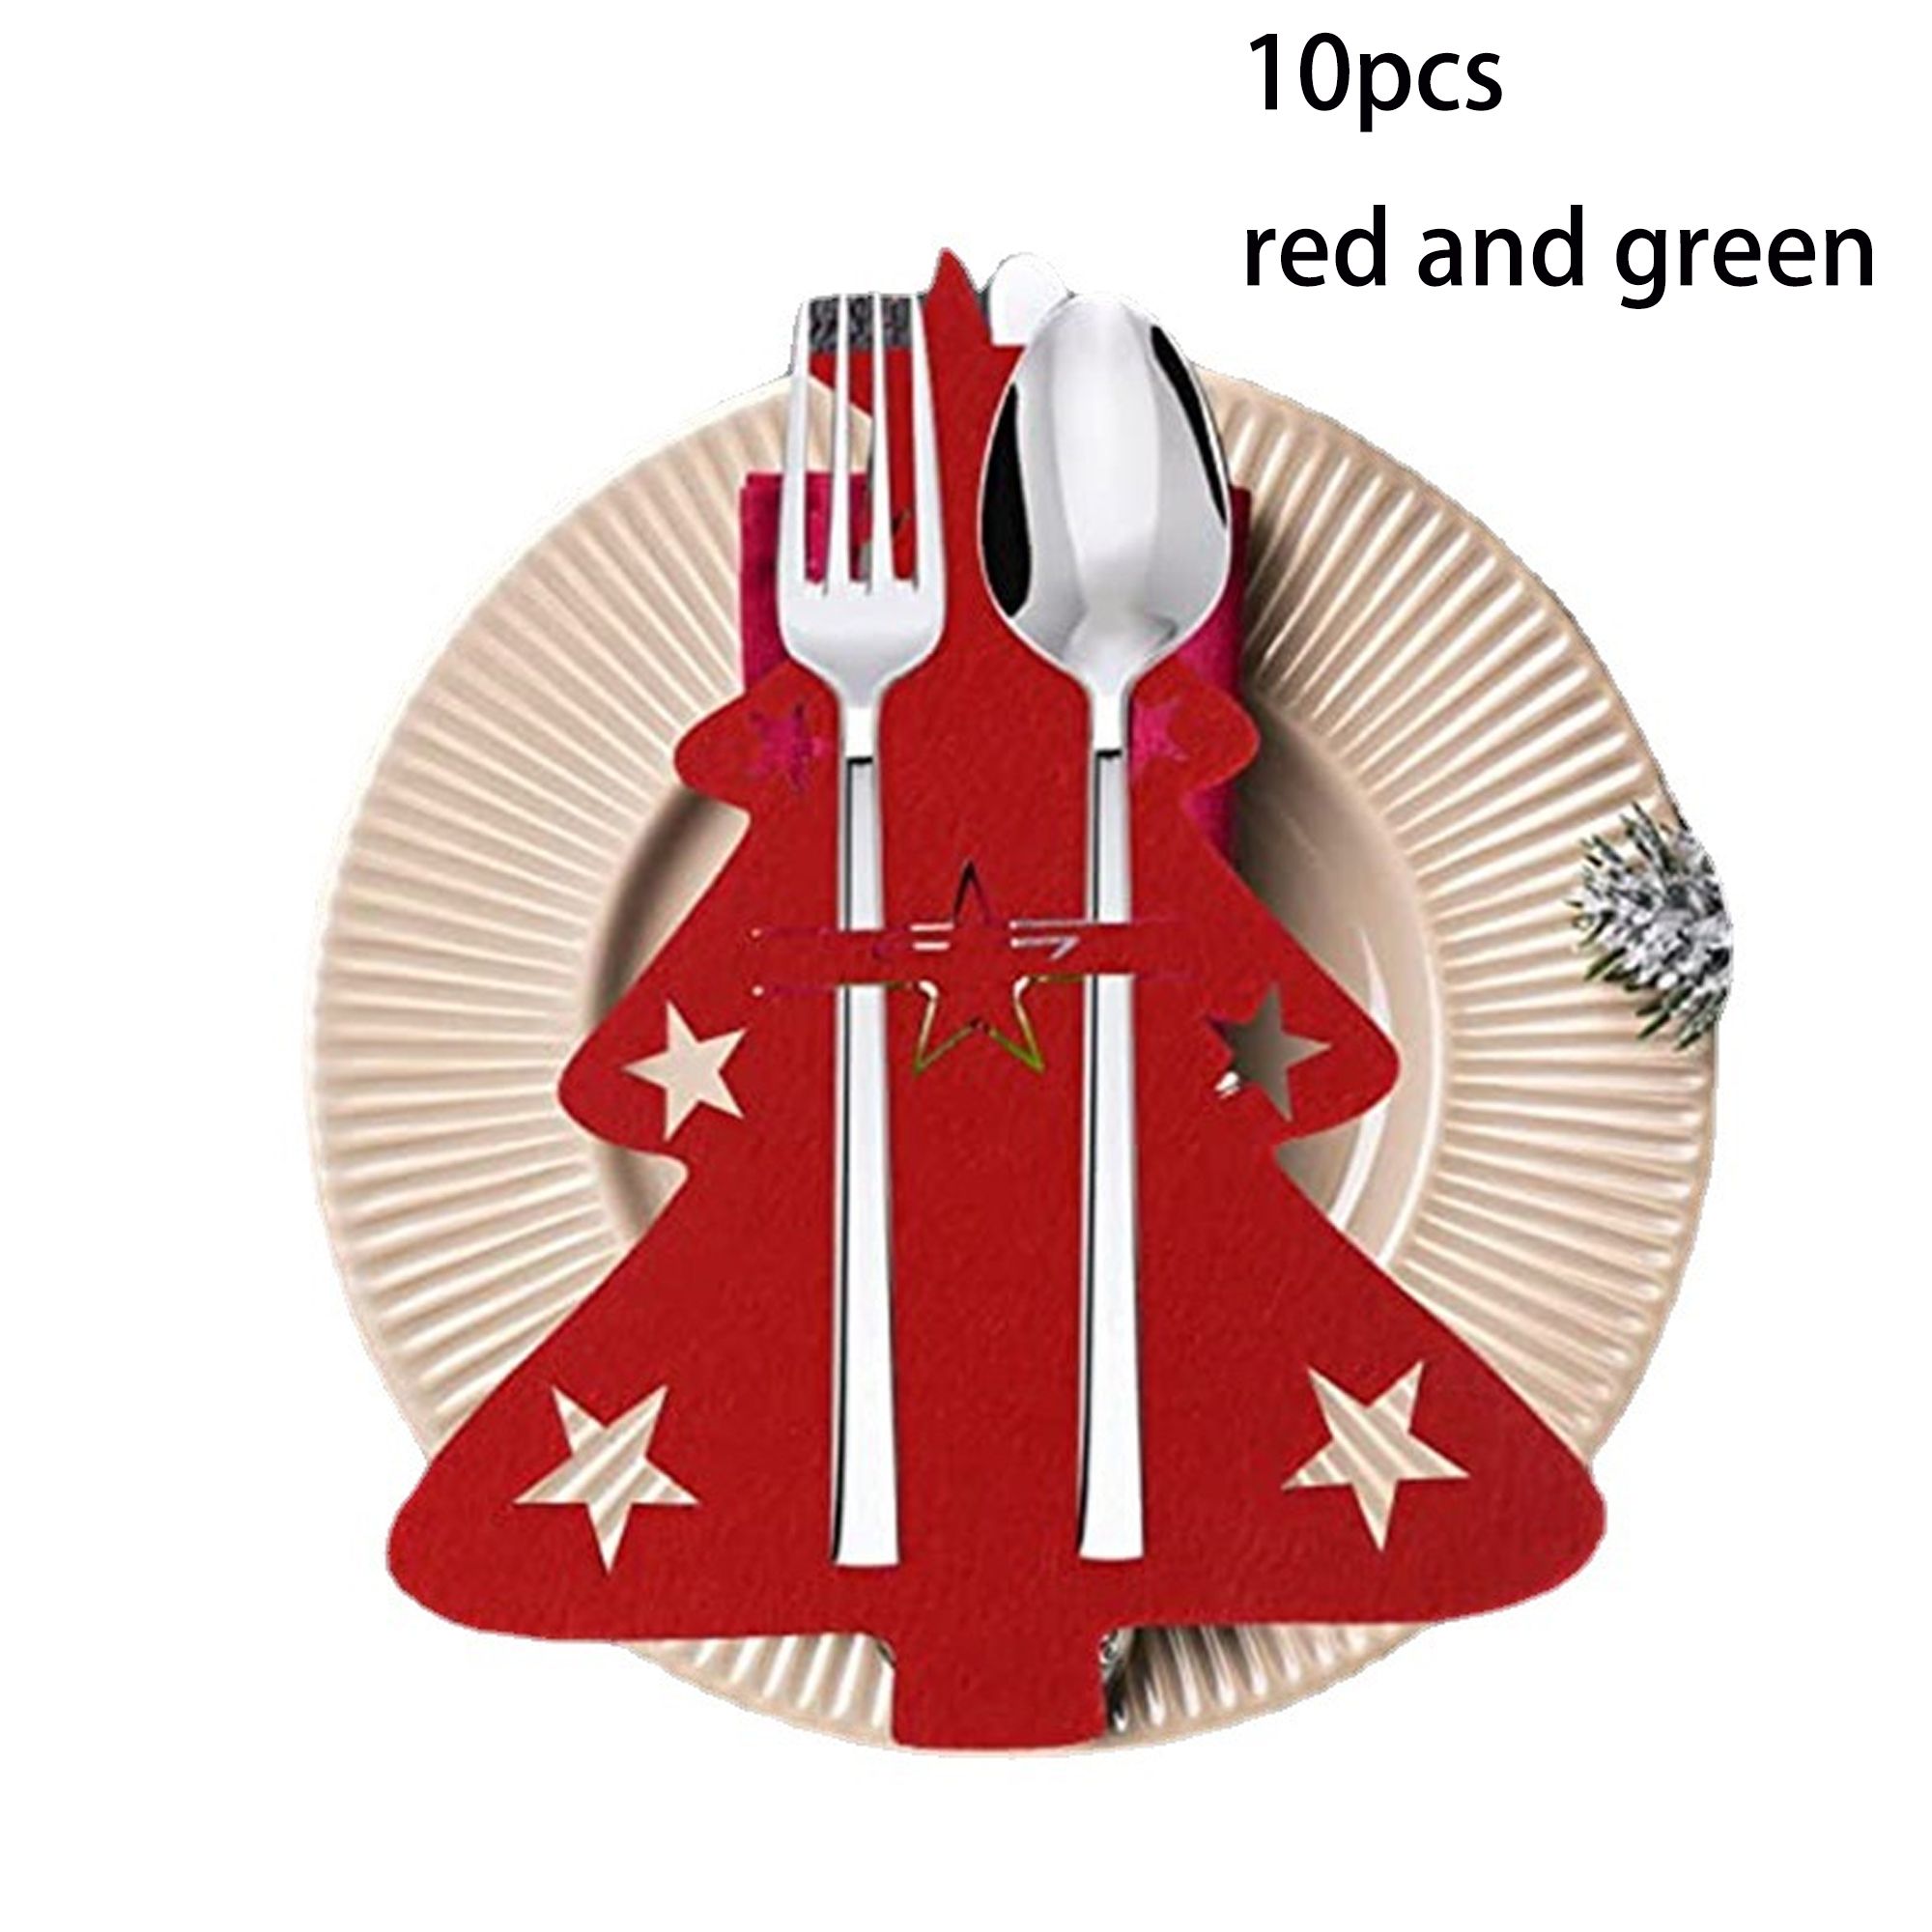 一套 10 個紅色和綠色毛氈聖誕餐具架